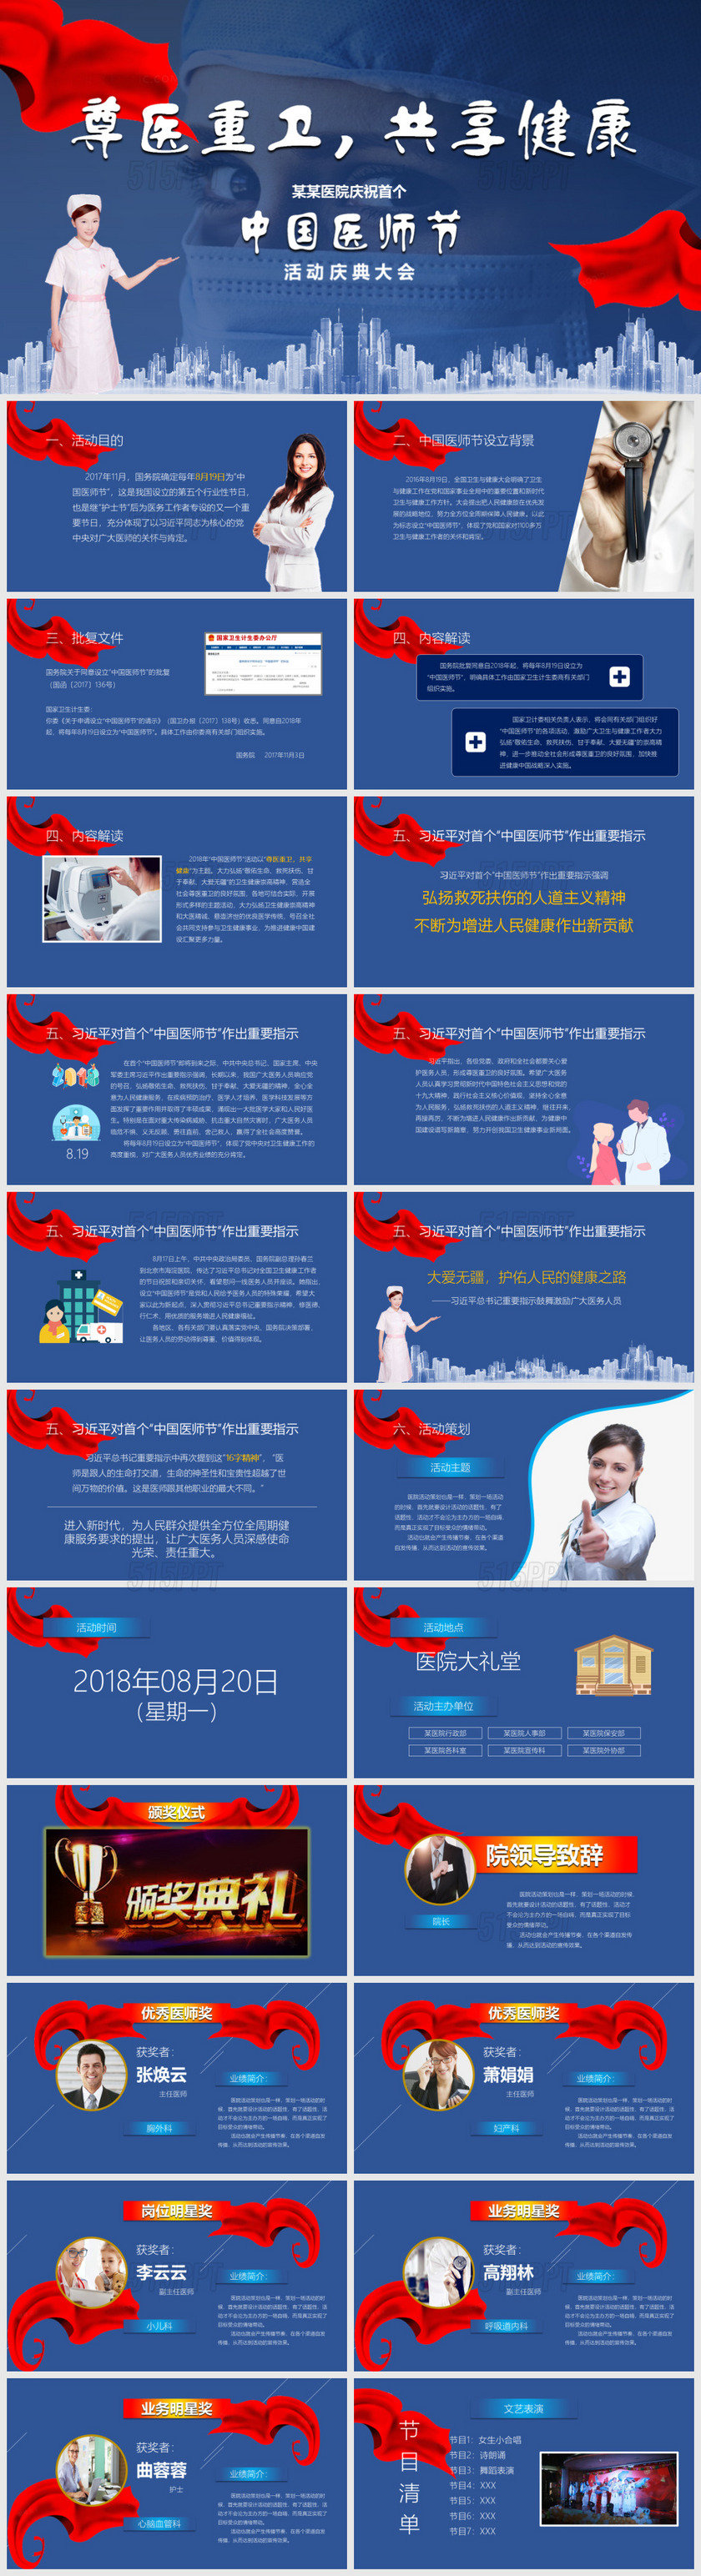 庆祝2020中国医师节活动策划介绍动态模板